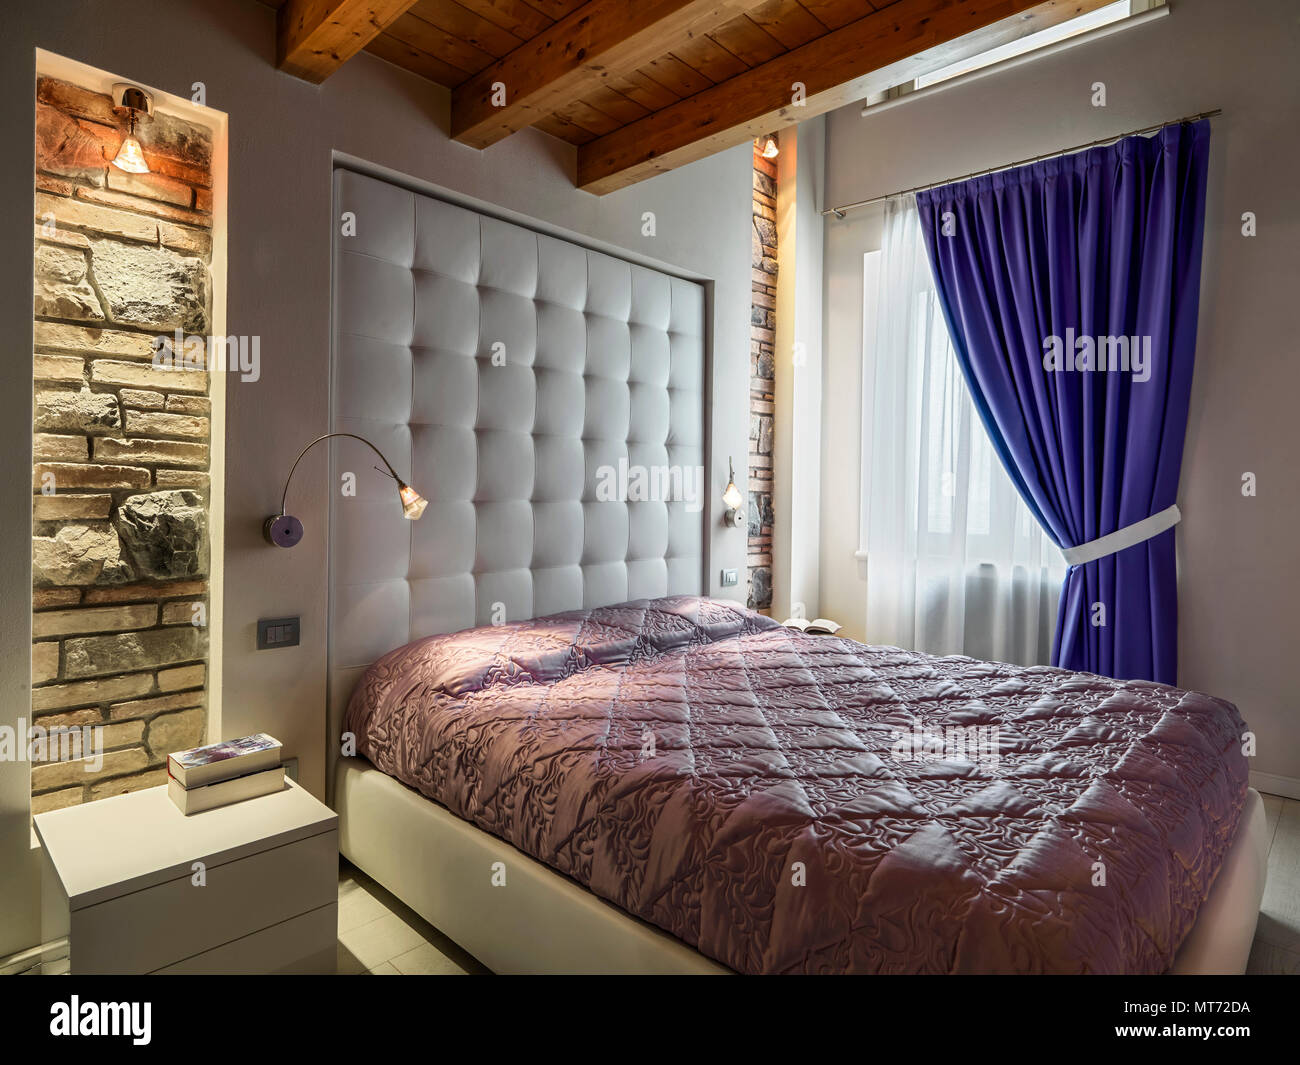 Contemporanee camere da letto interno con soffitto in legno e tende blu, una parte di parete sono in pietra Foto Stock